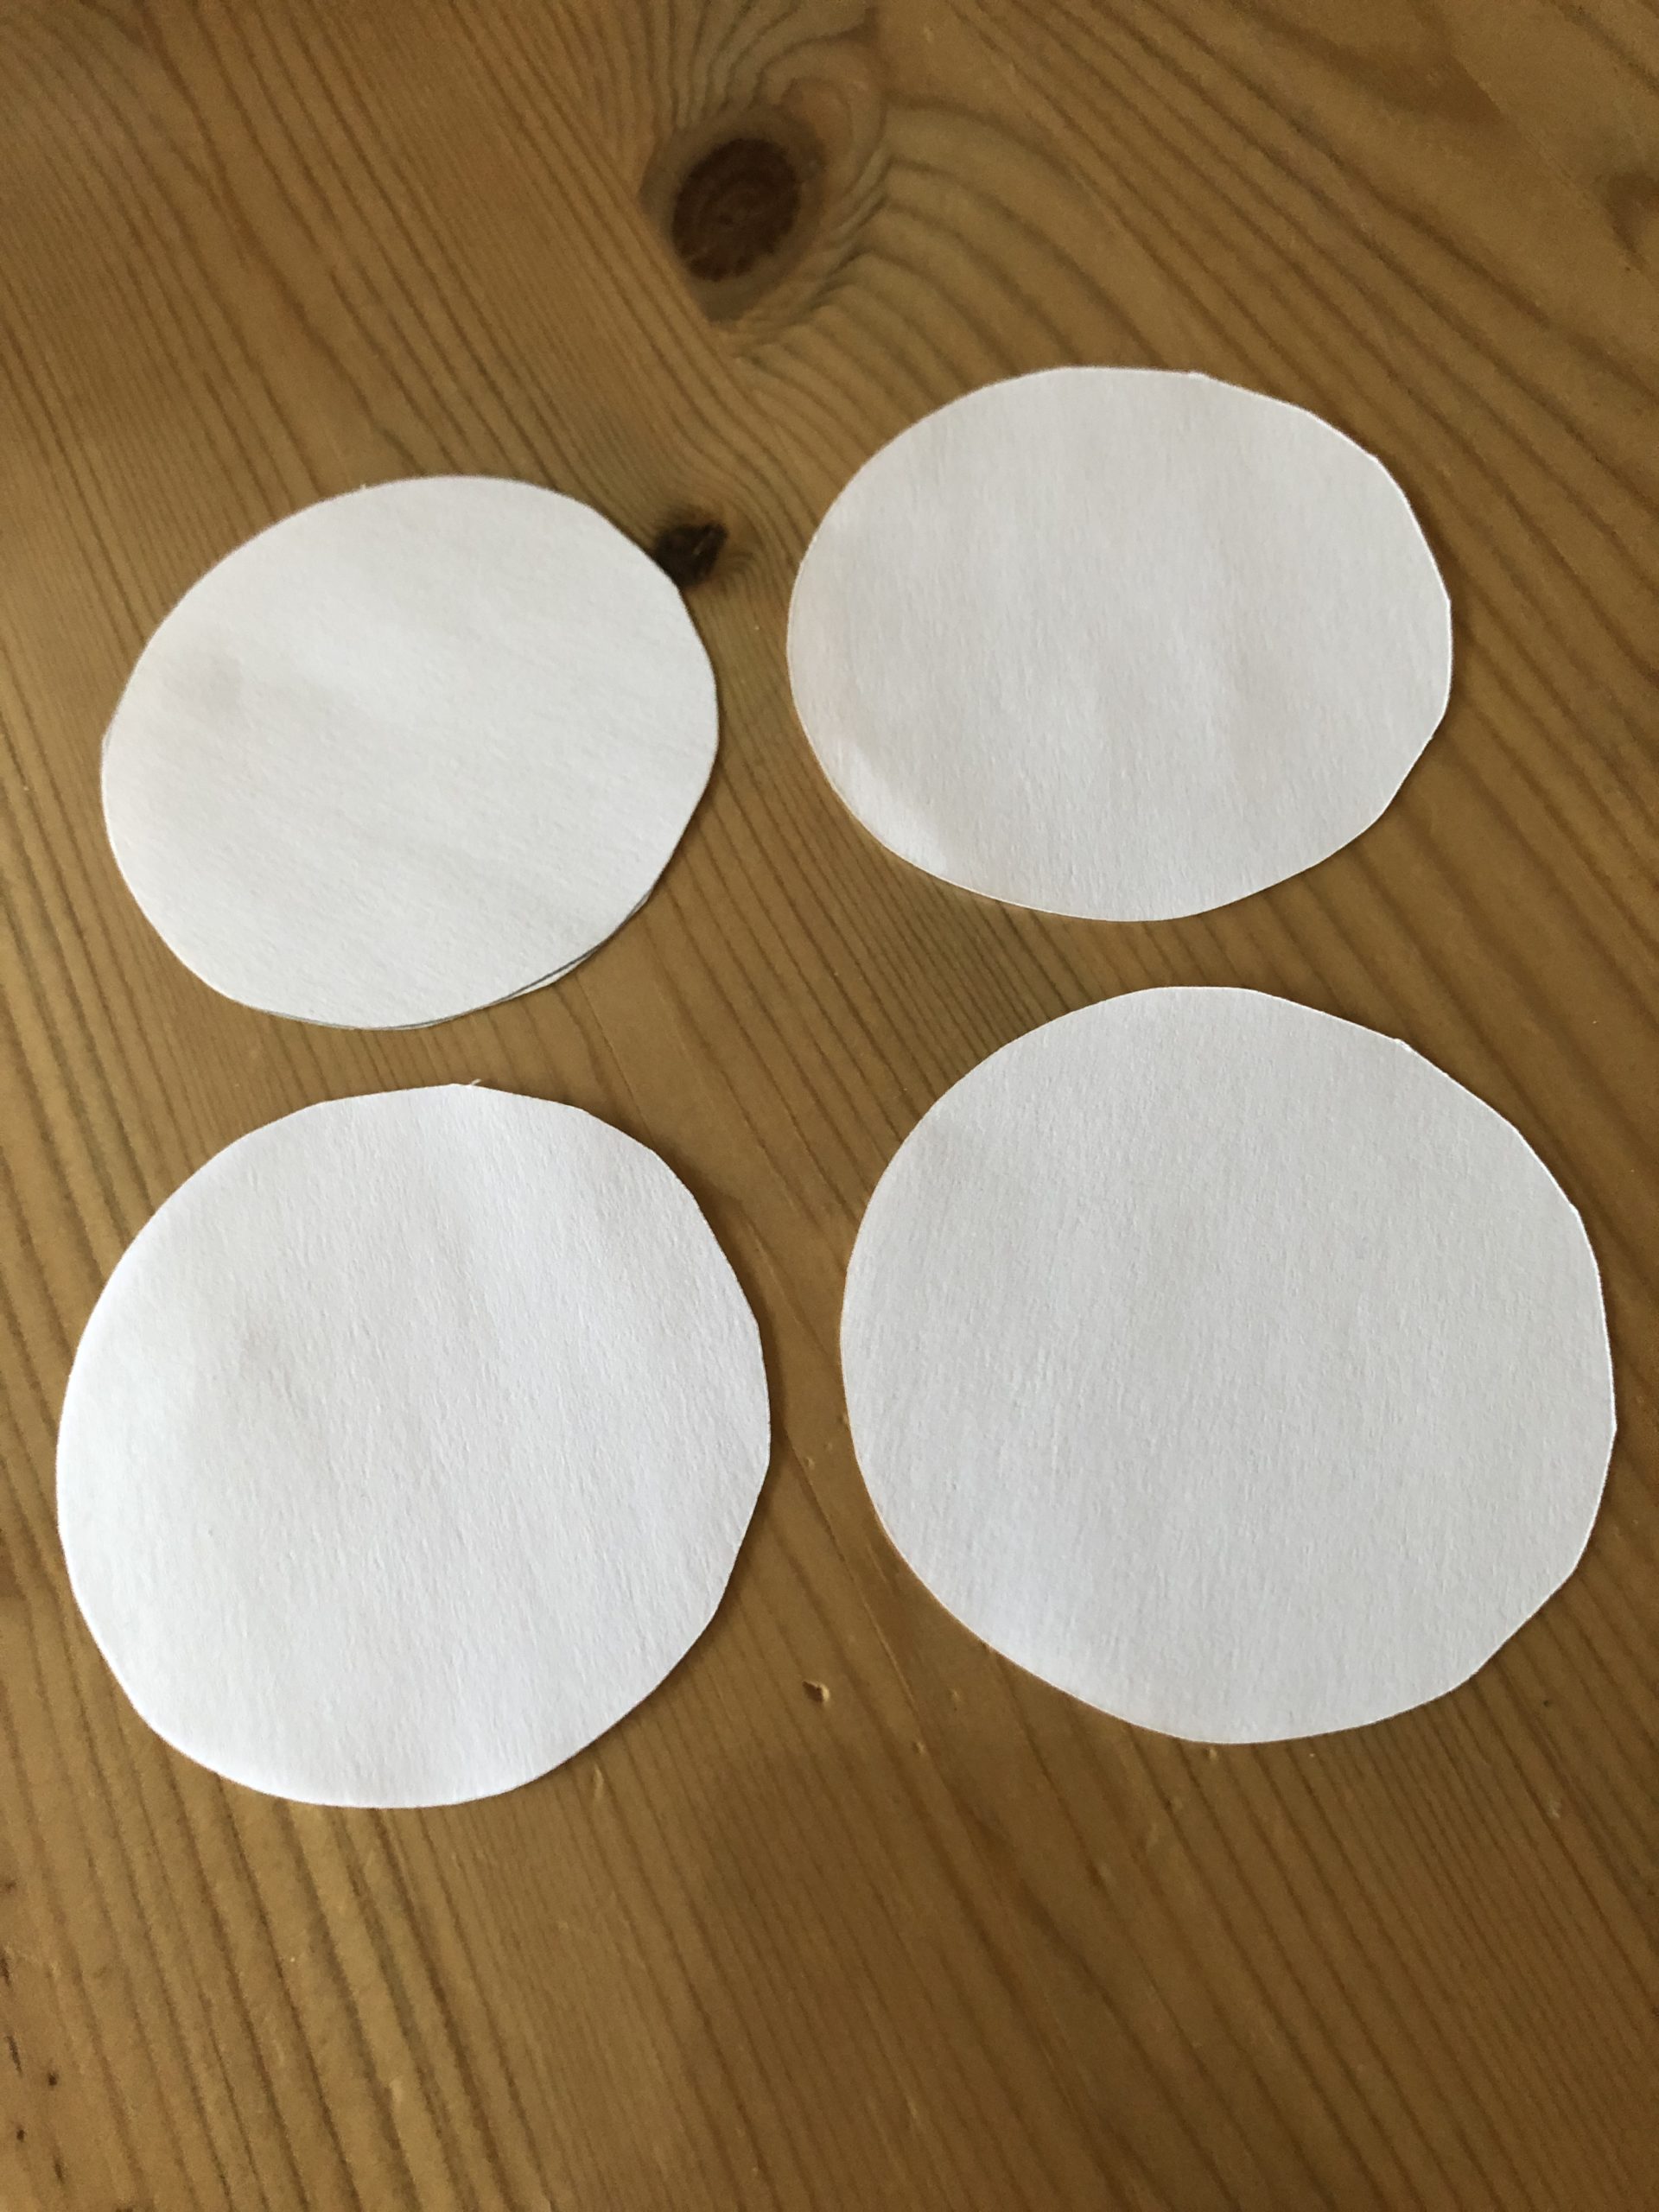 Bild zum Schritt 4 für das Bastel- und DIY-Abenteuer für Kinder: 'Schneidet dazu 4 weiße Kreise aus Toilettenpapier aus - das...'